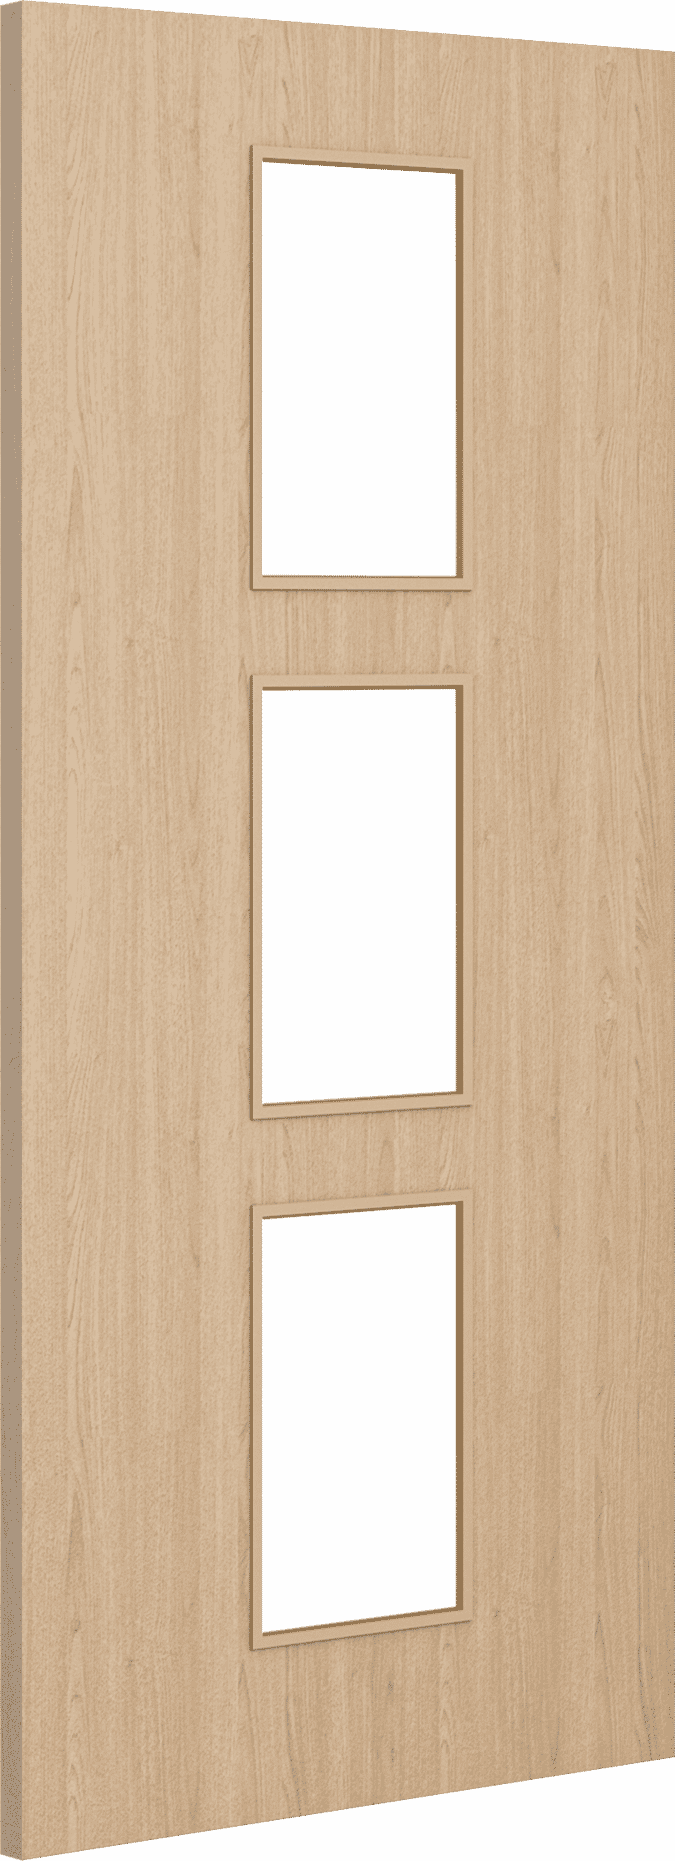 2040mm x 926mm x 44mm Architectural Oak 11 Clear Glazed - Prefinished FD30 Fire Door Blank